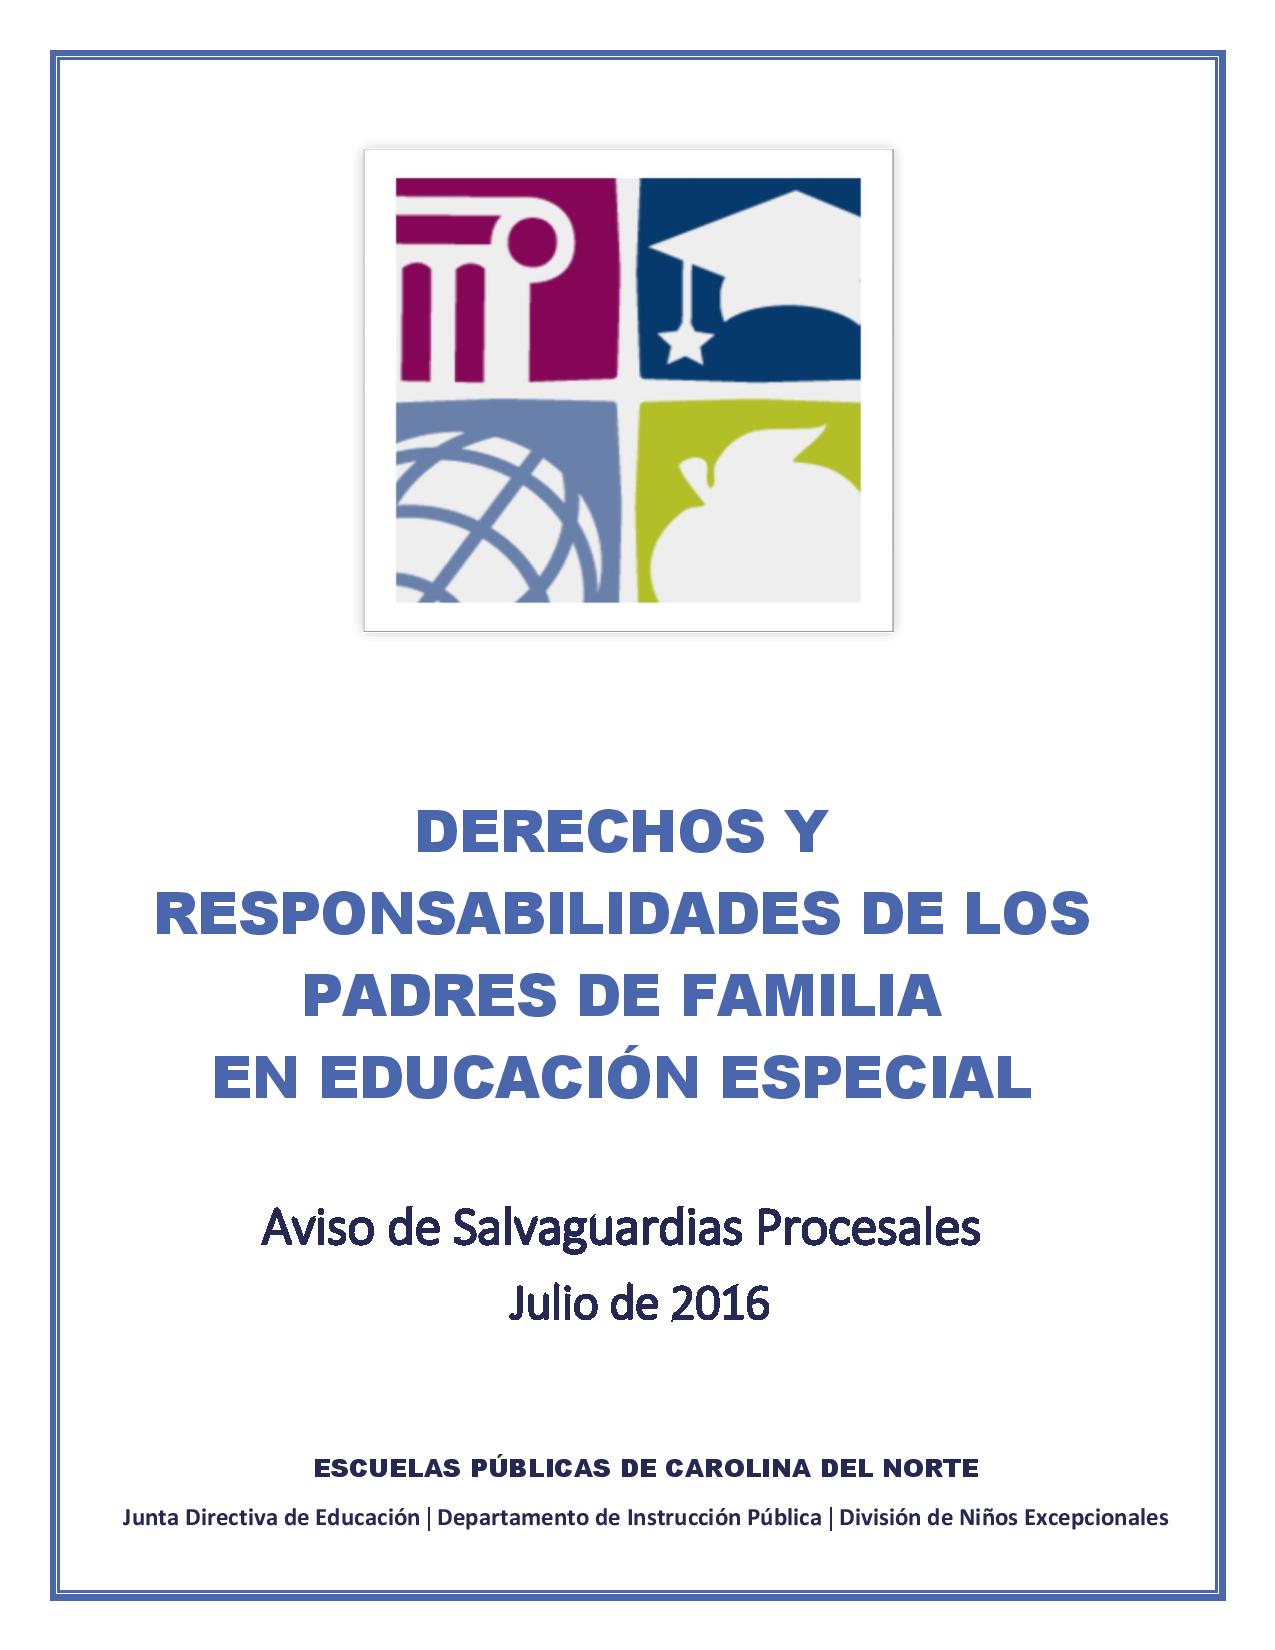 Bild des Handbuchs der Elternrechte auf Spanisch